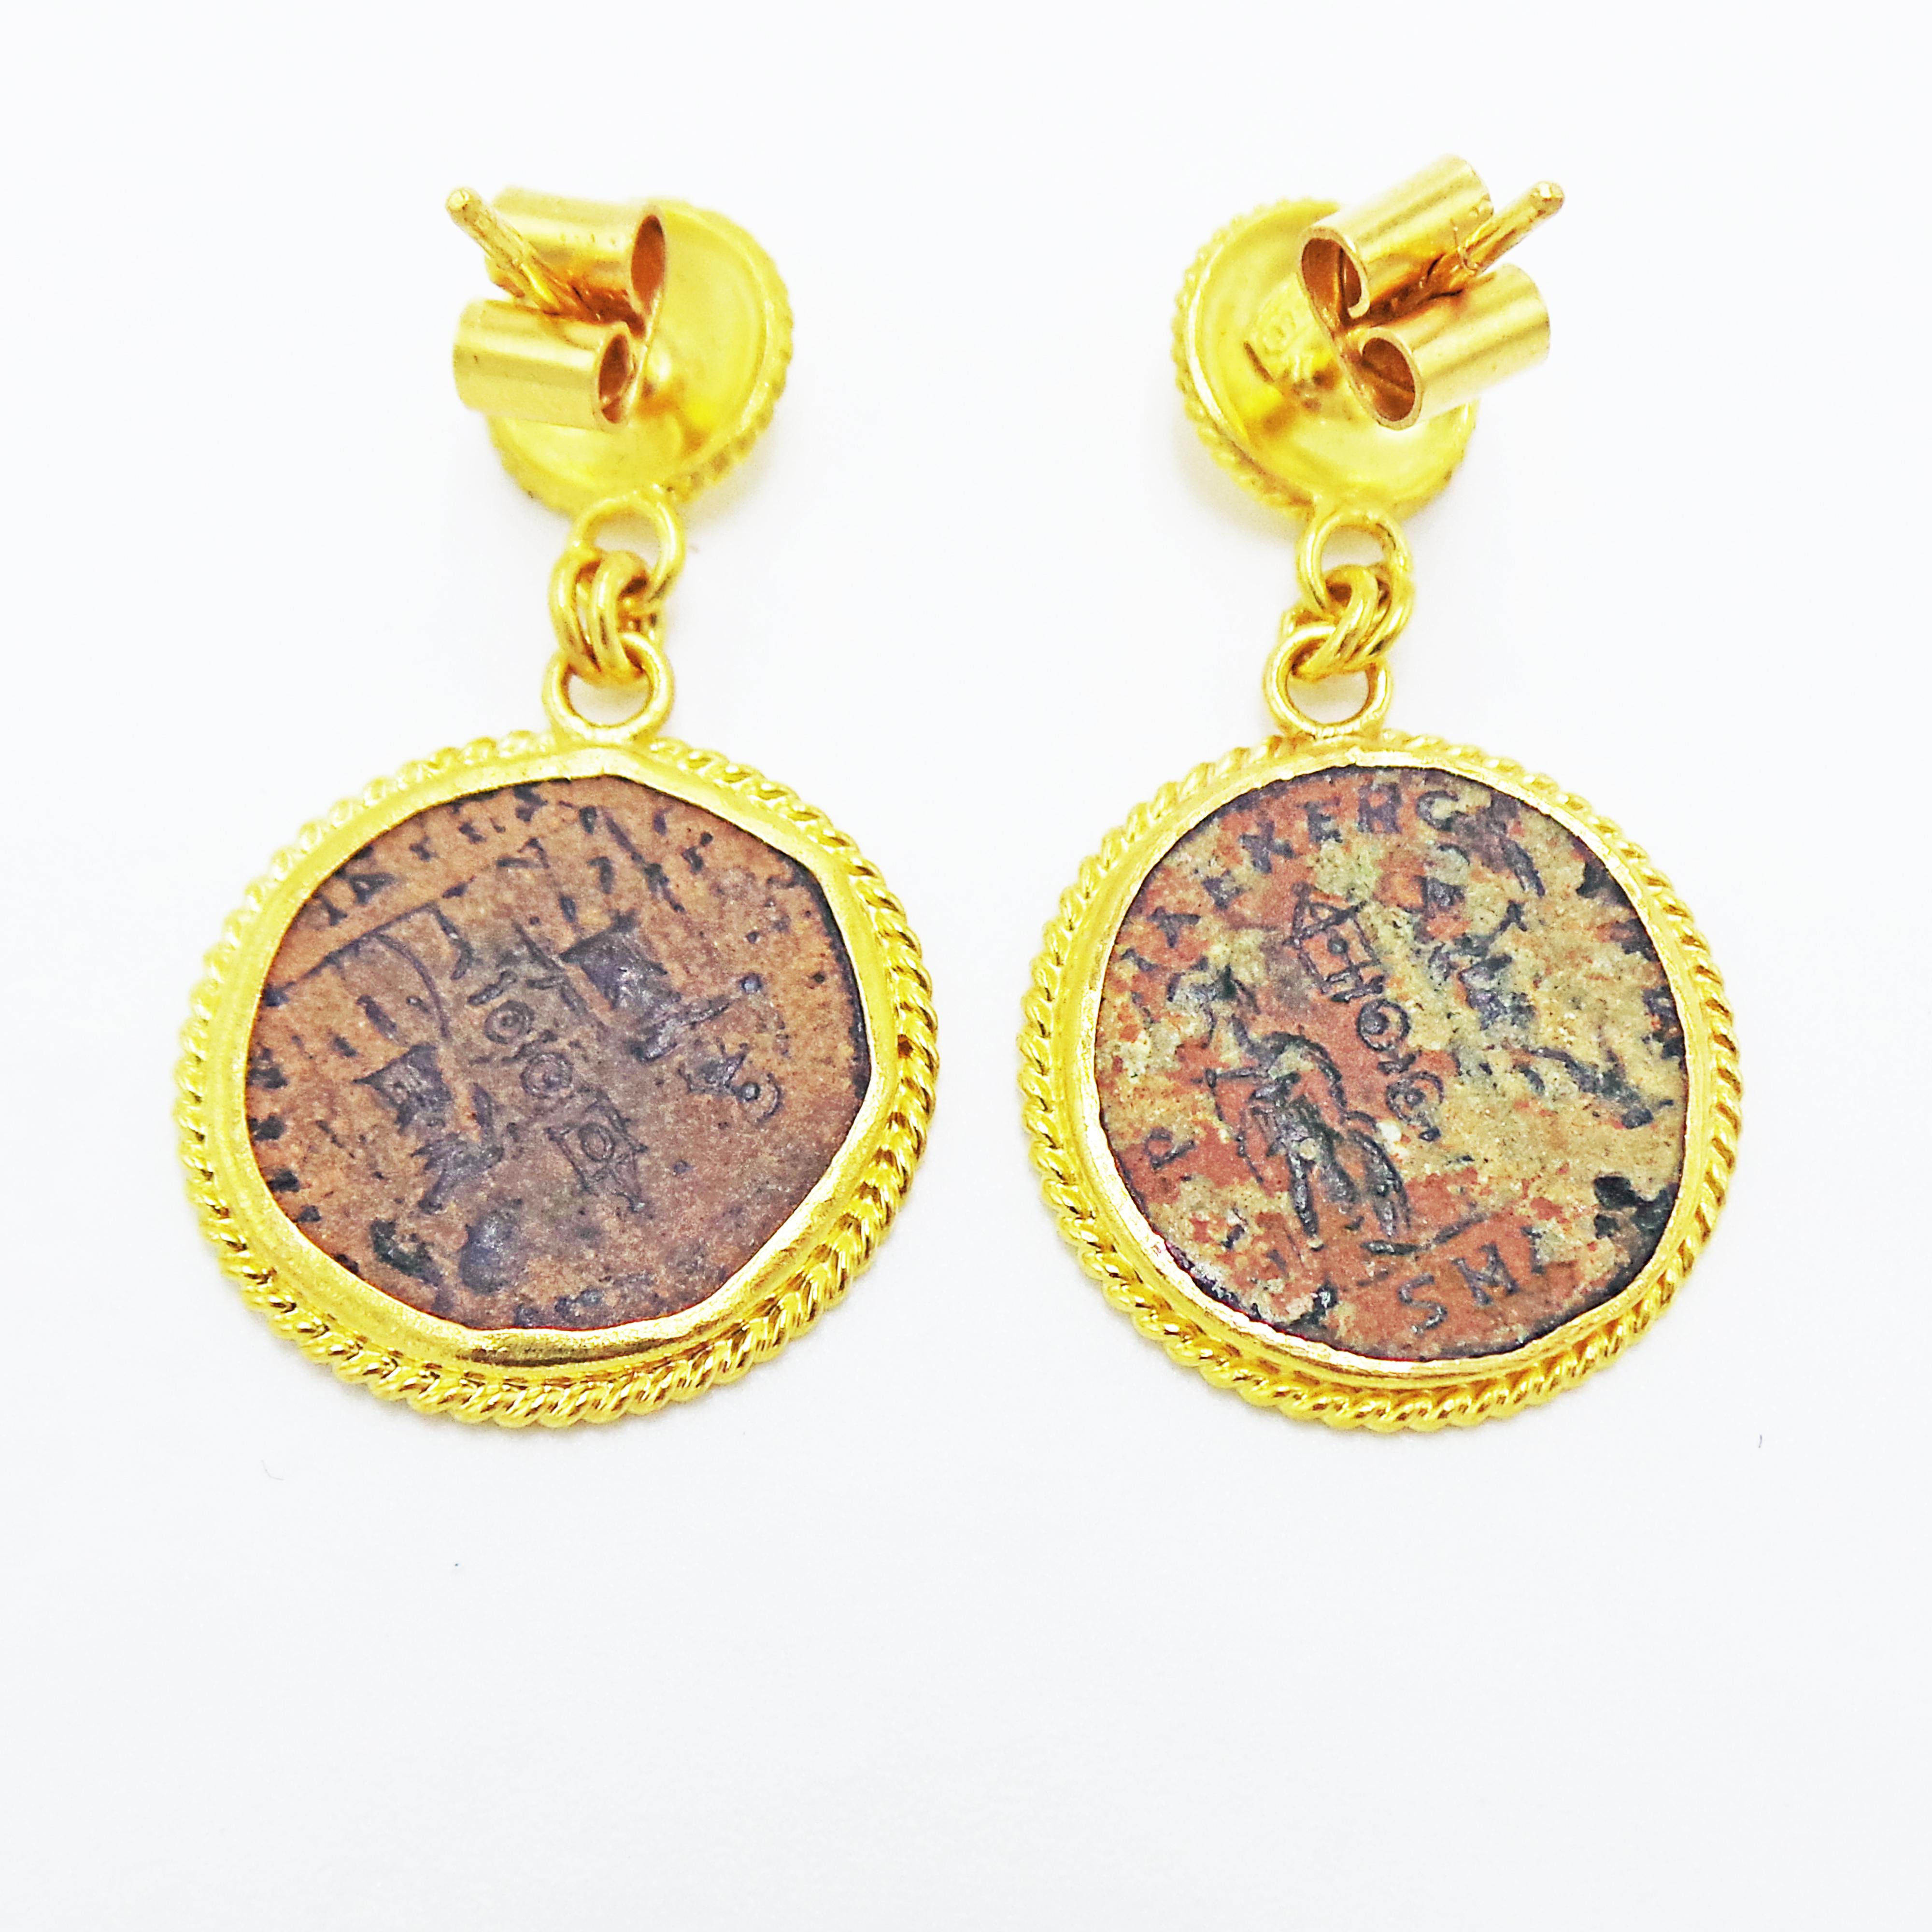 Authentische antike römische Bronzemünzen (Constantius II., 337-361 n. Chr.), eingefasst in detailreiche 22-karätige Gelbgold-Ohrstecker.